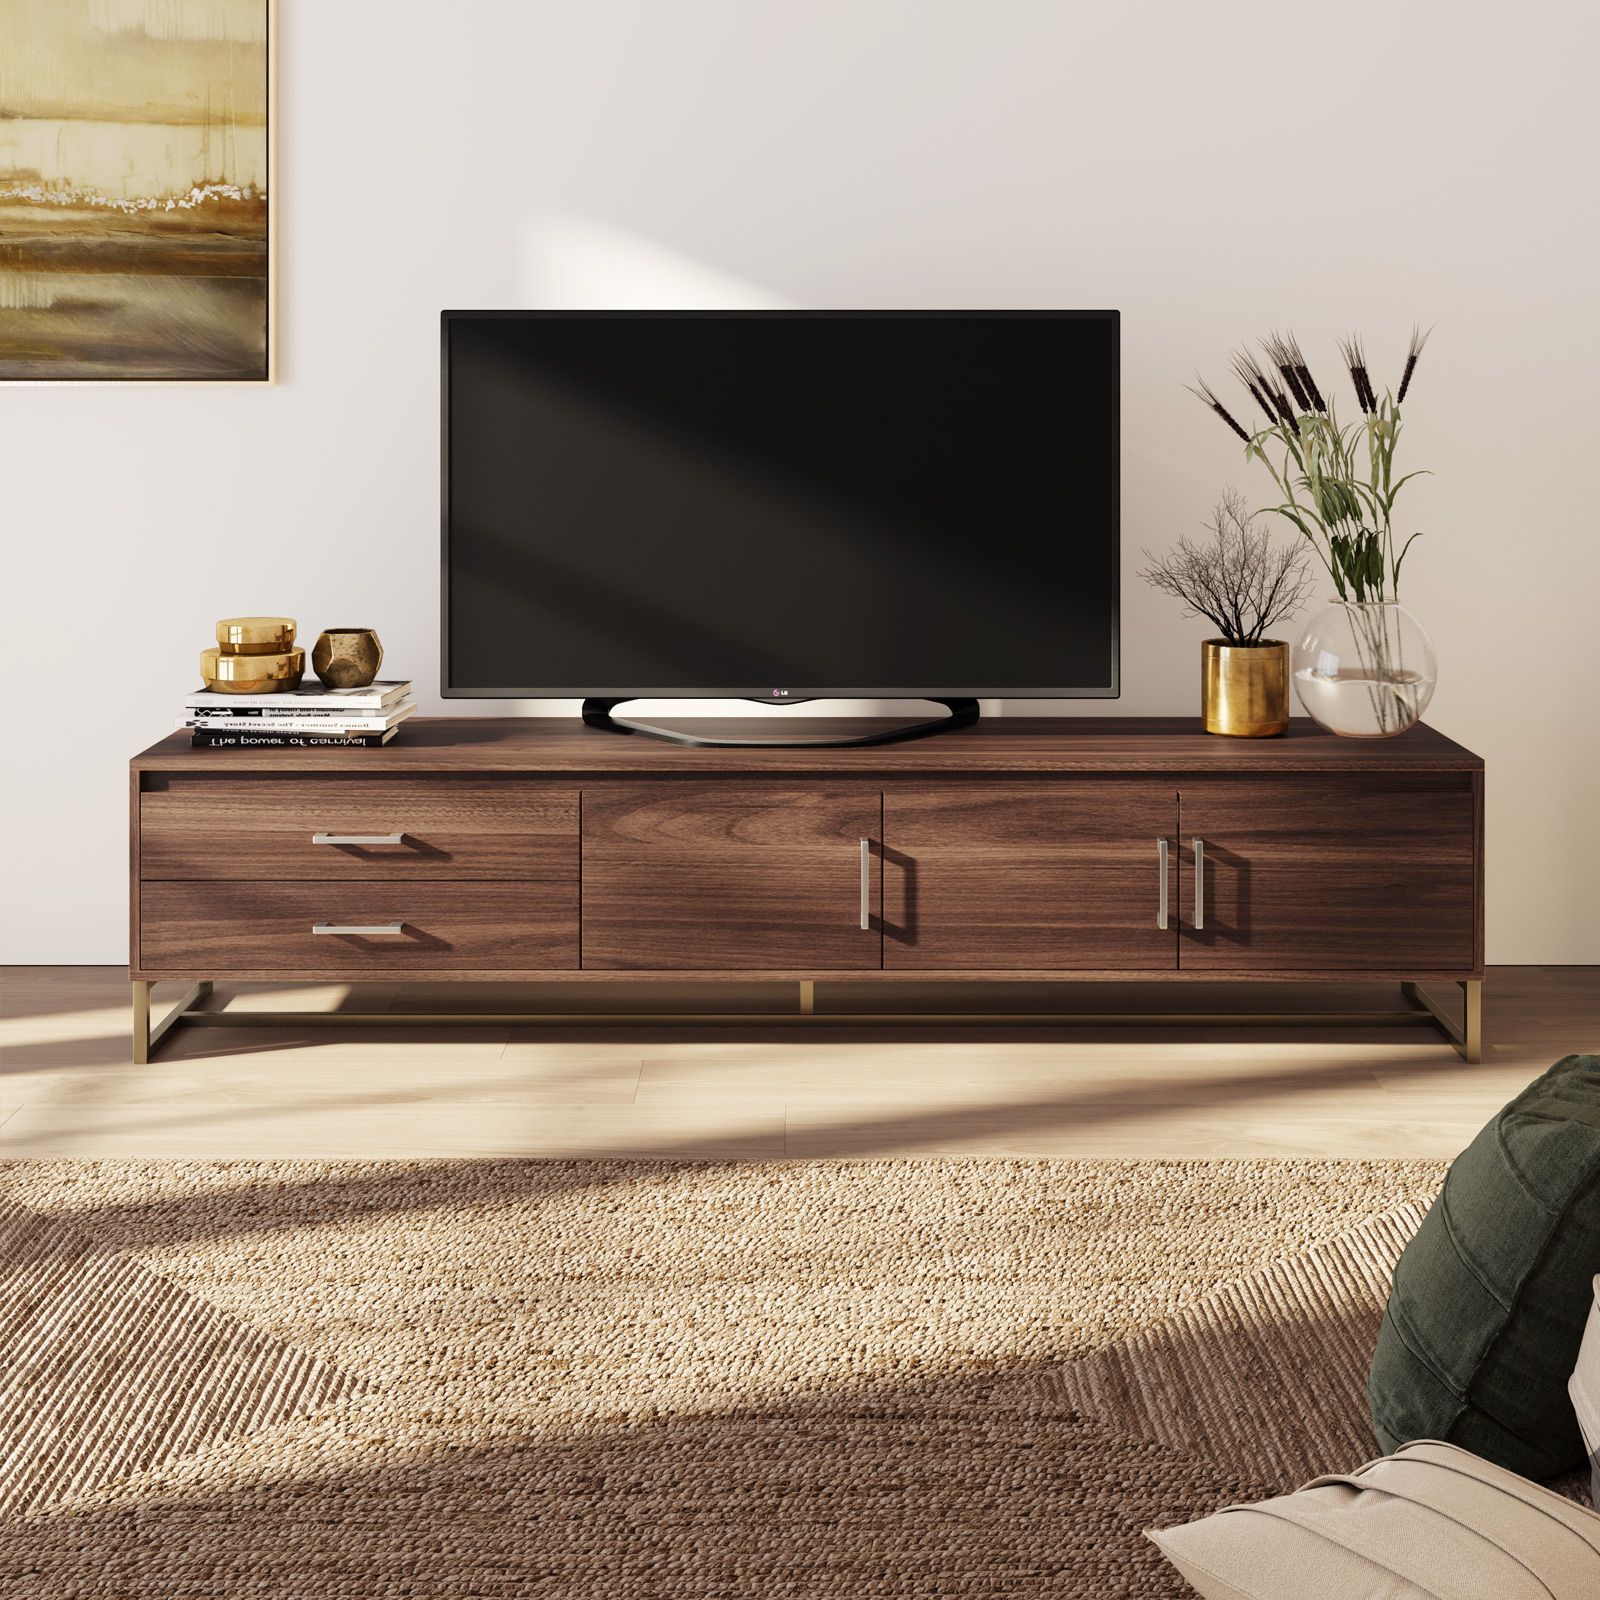 Mobile porta TV con Ruote in Legno Moderno Elegante vari colori